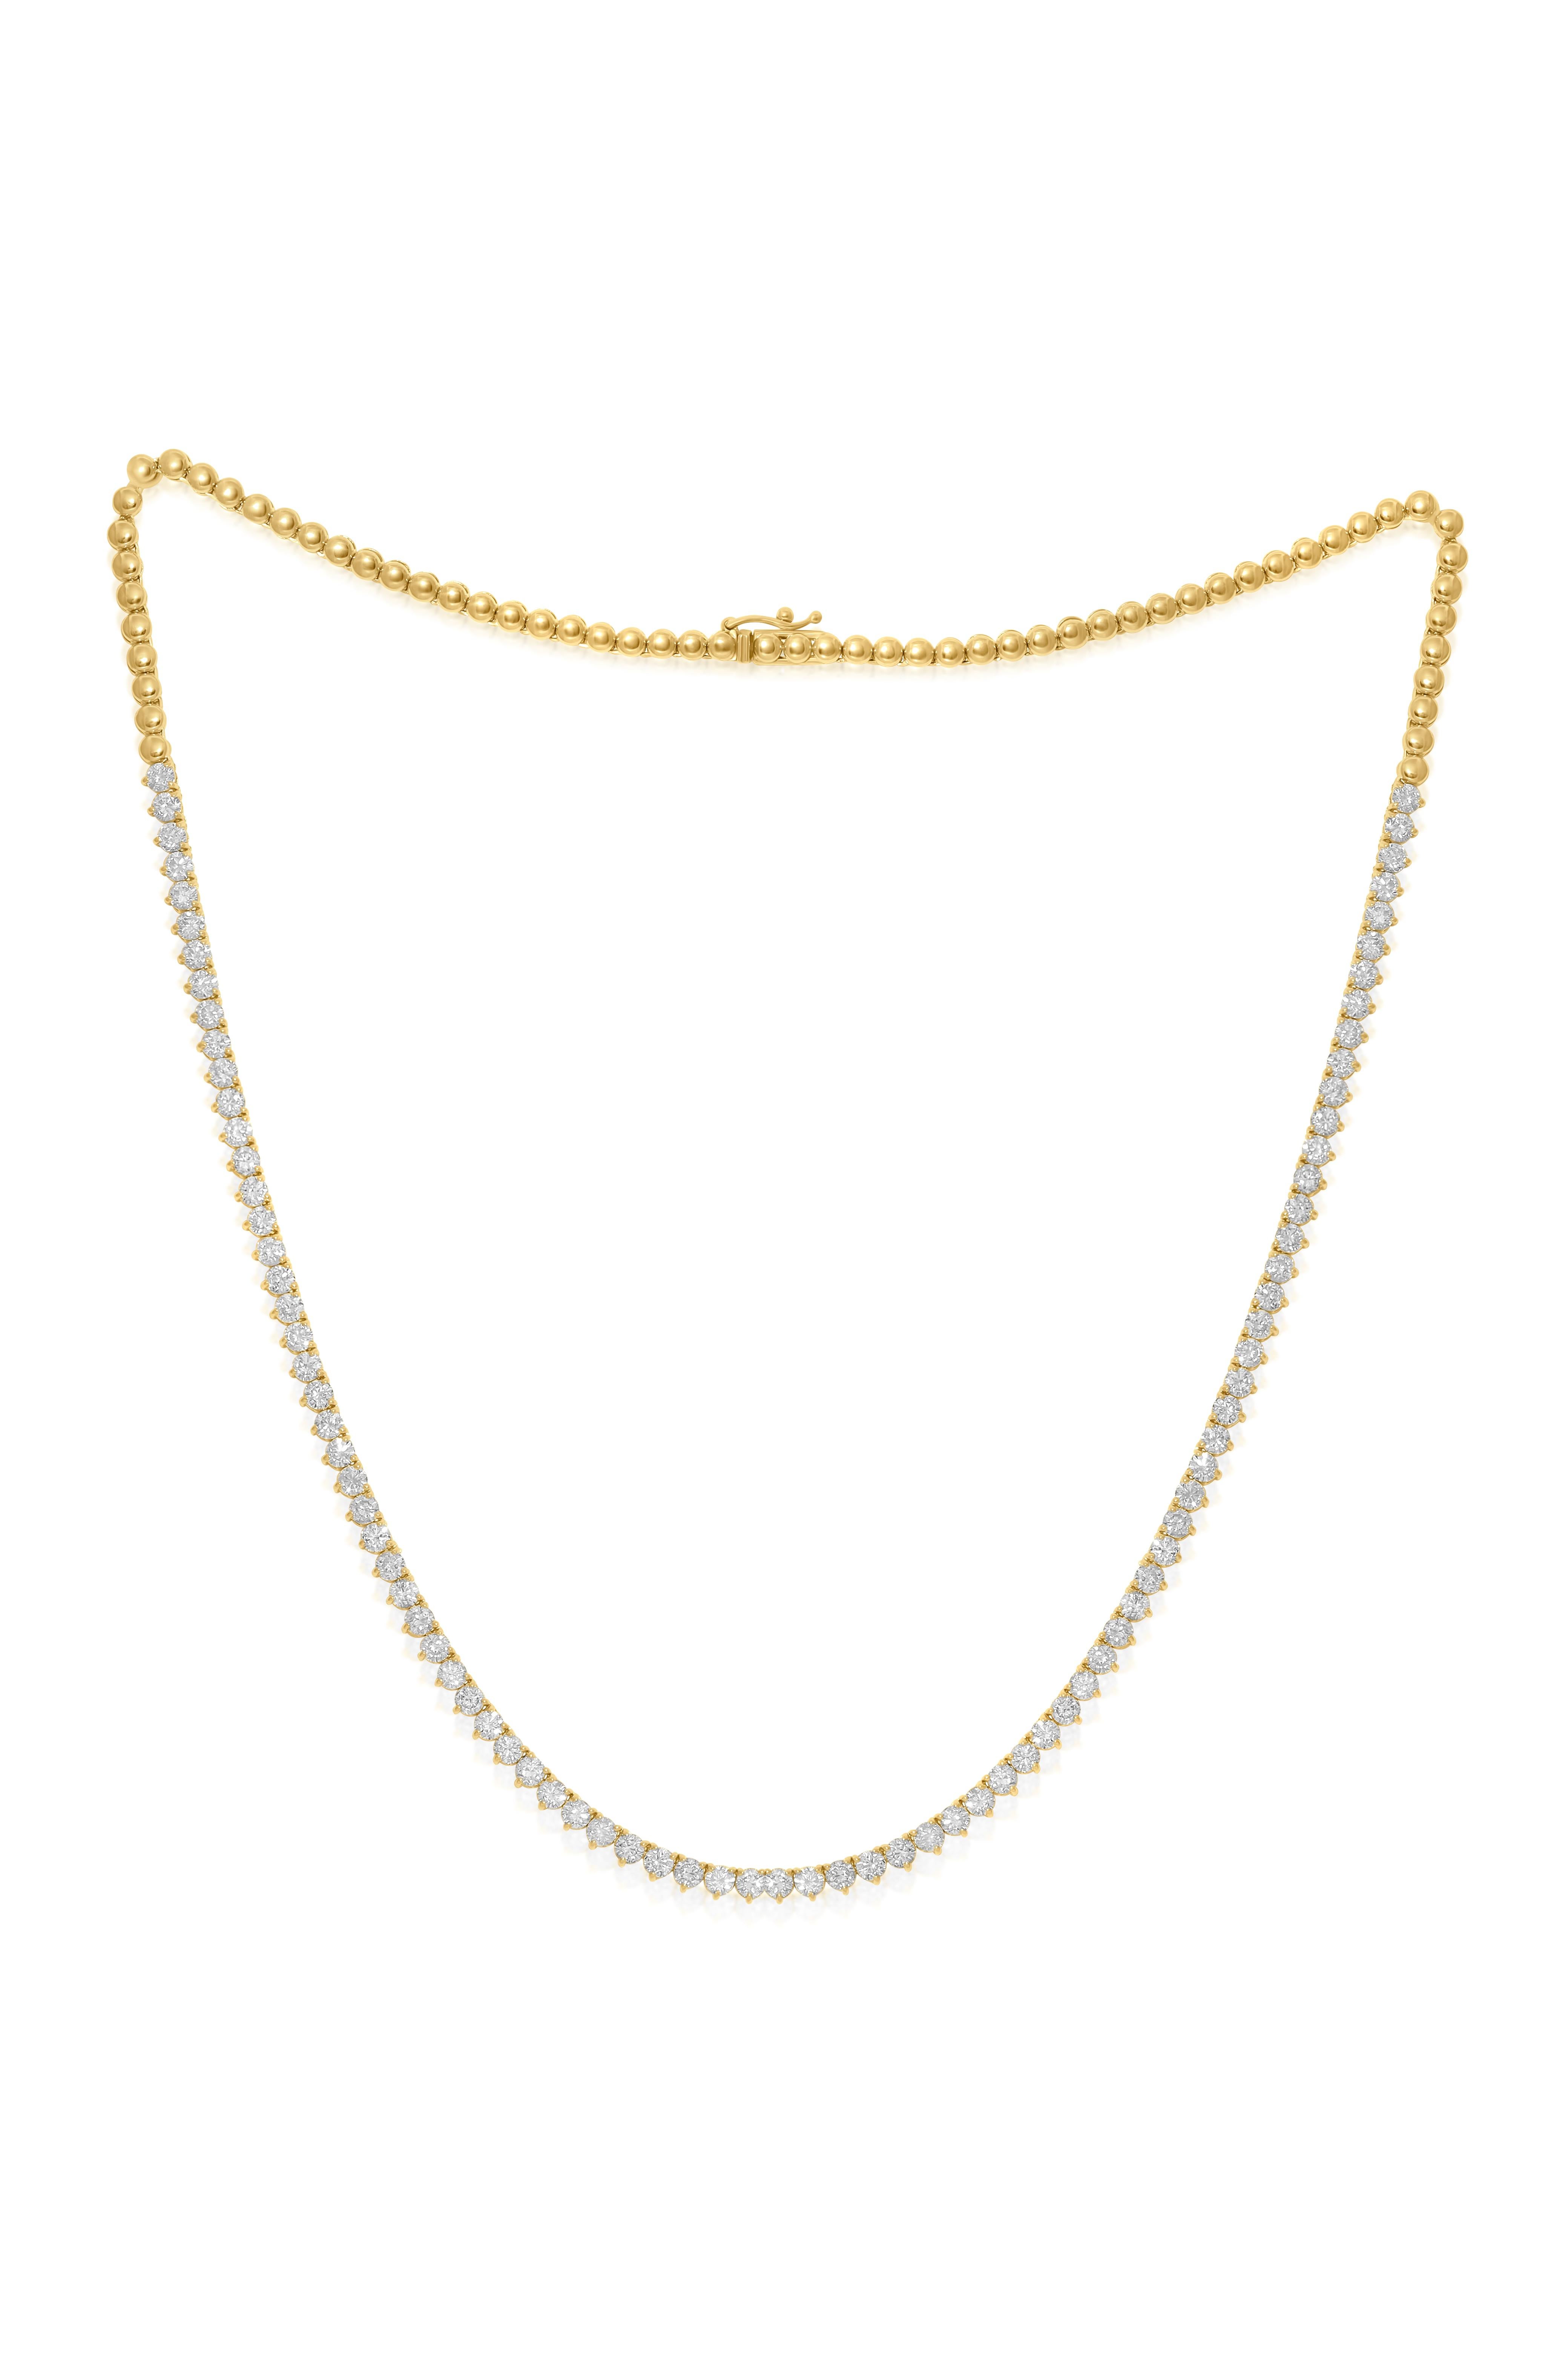 14K Gelbgold Half Way Diamond Tennis Halskette, mit 7,00 Karat Diamanten, gefasst in Gelbgold 3 Zackenfassung mit 88 Steinen 
G-H in Farbe SI in Reinheit 
